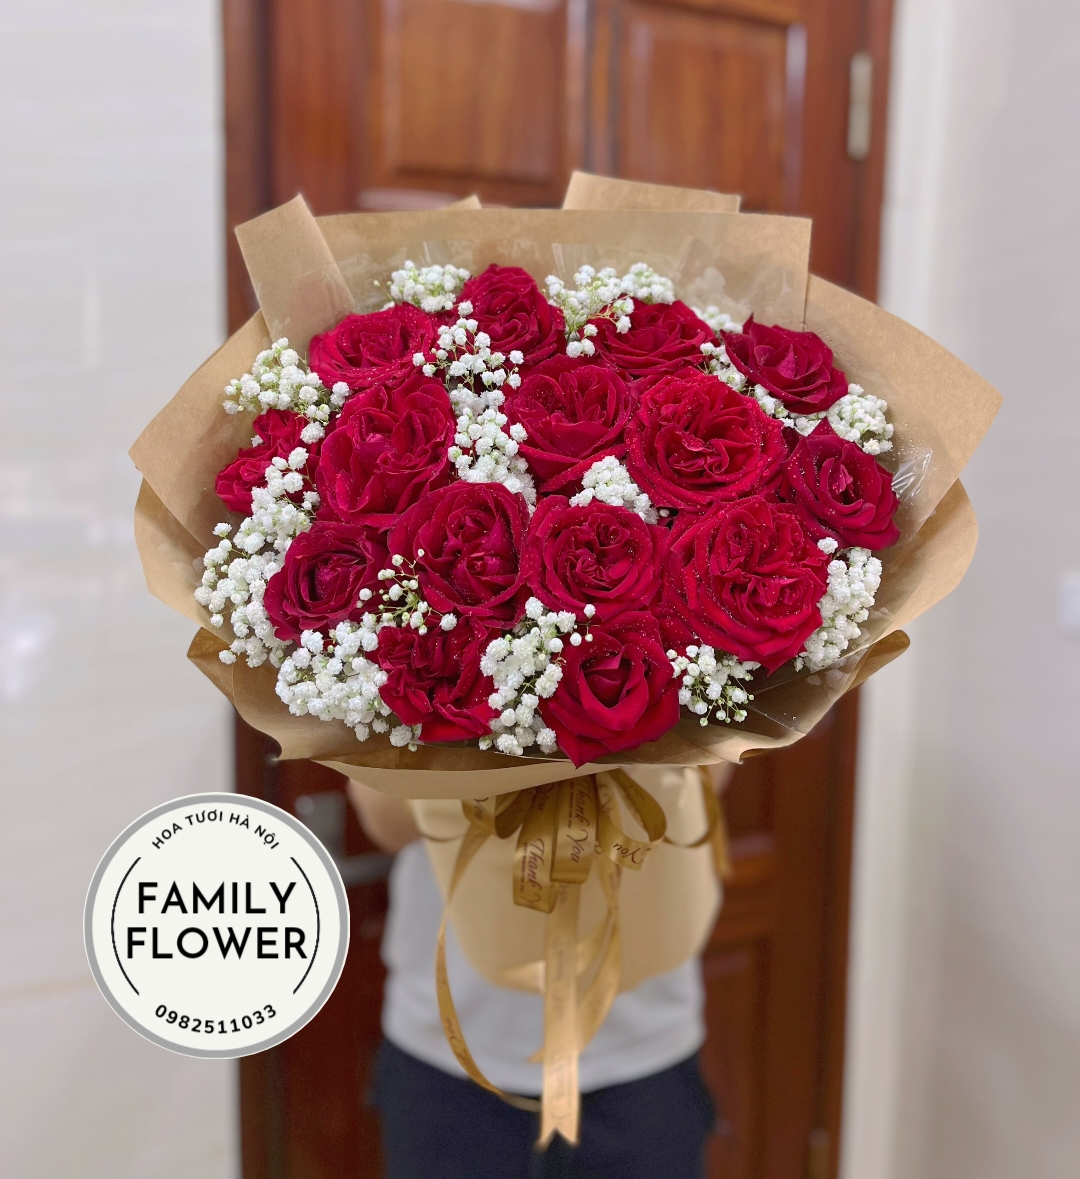 Bó hoa hồng đỏ tặng người yêu nhân dịp sinh nhật, valentine , 14 tháng 3 , mùng 8 tháng 3 ở Hà NỘI